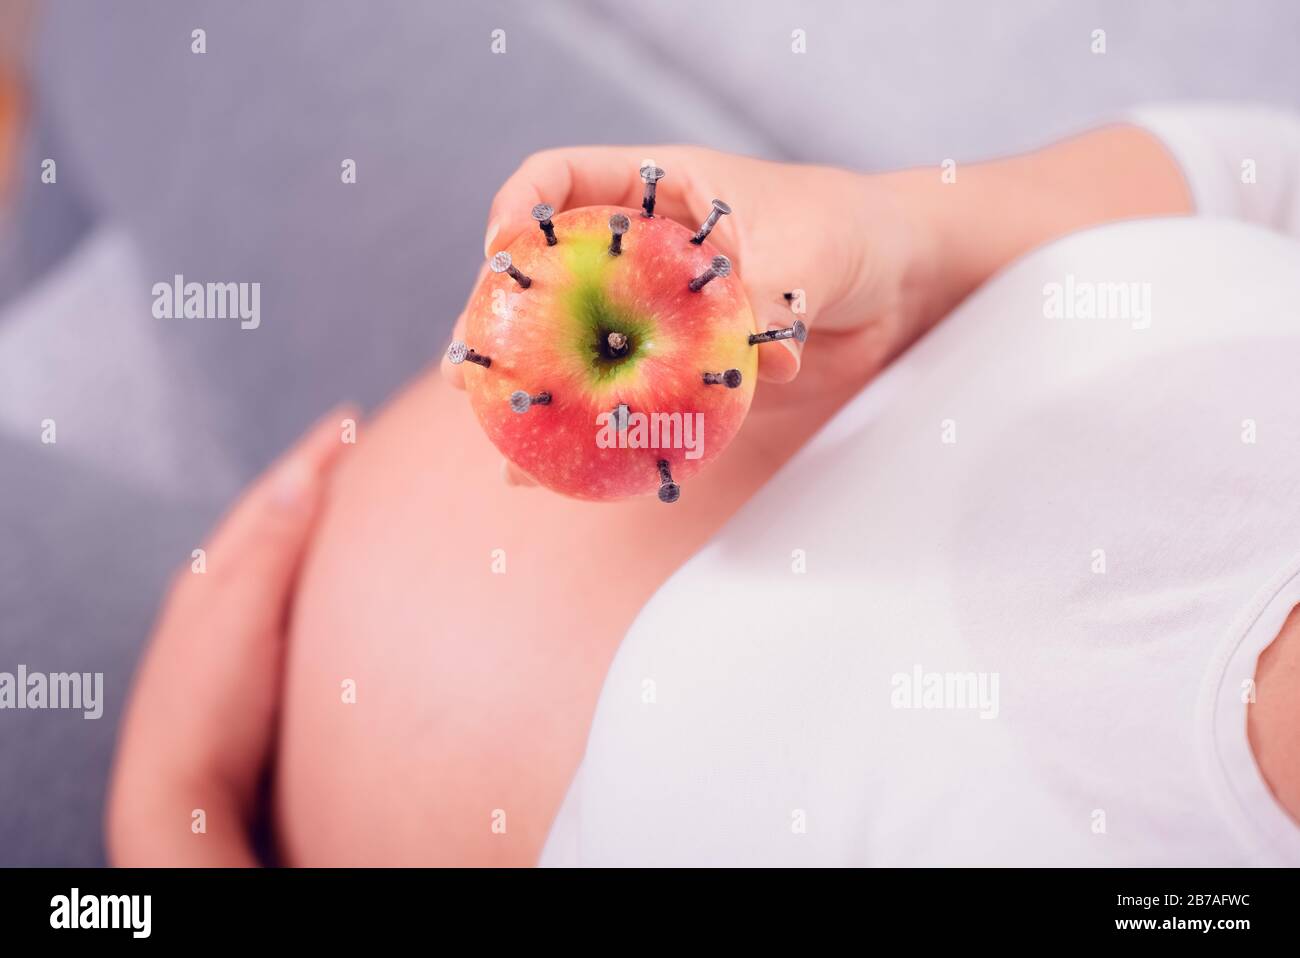 Donna incinta che mangia mela farcita con unghie di legno per aumentare il livello di ferro nel sangue. Trattamento vecchio stile per aumentare l'emoglobina. Foto Stock